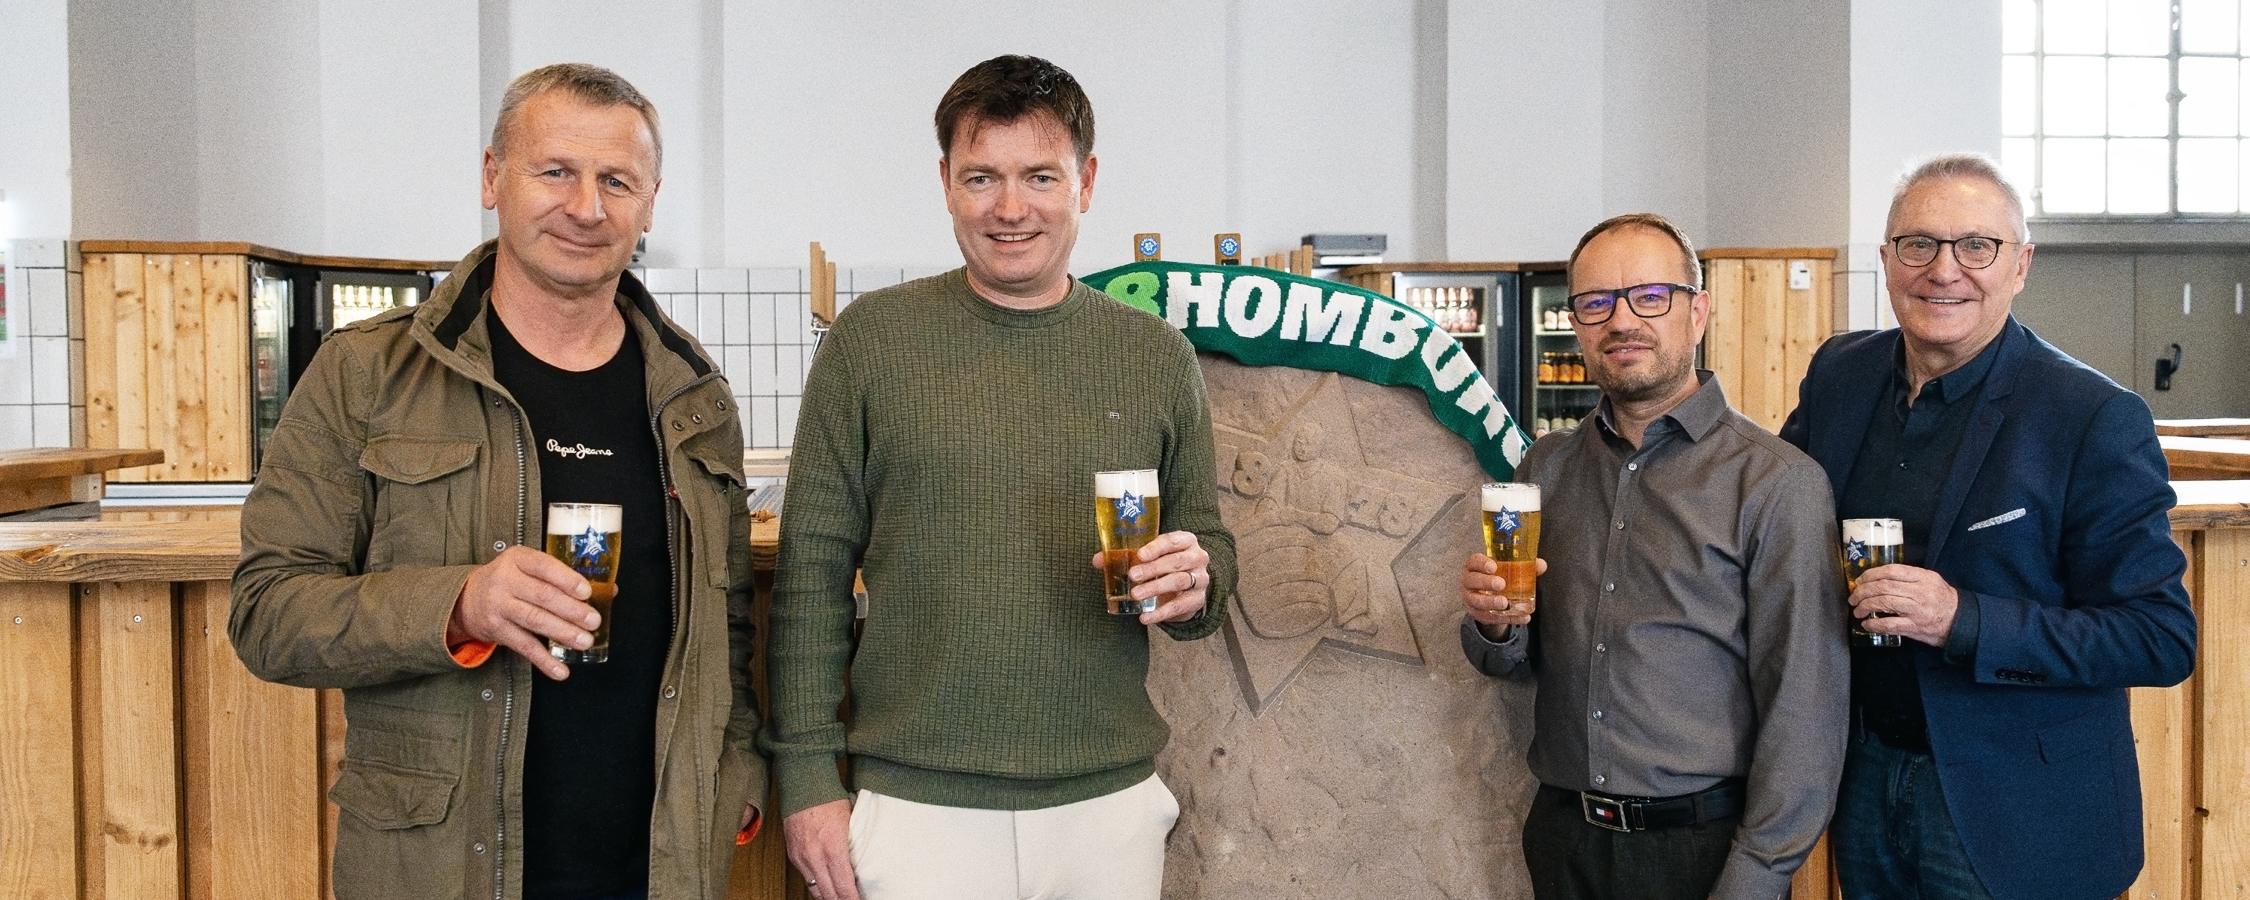 FC 08 Homburg und die KARLSBERG Brauerei verlängern ihre Kooperation